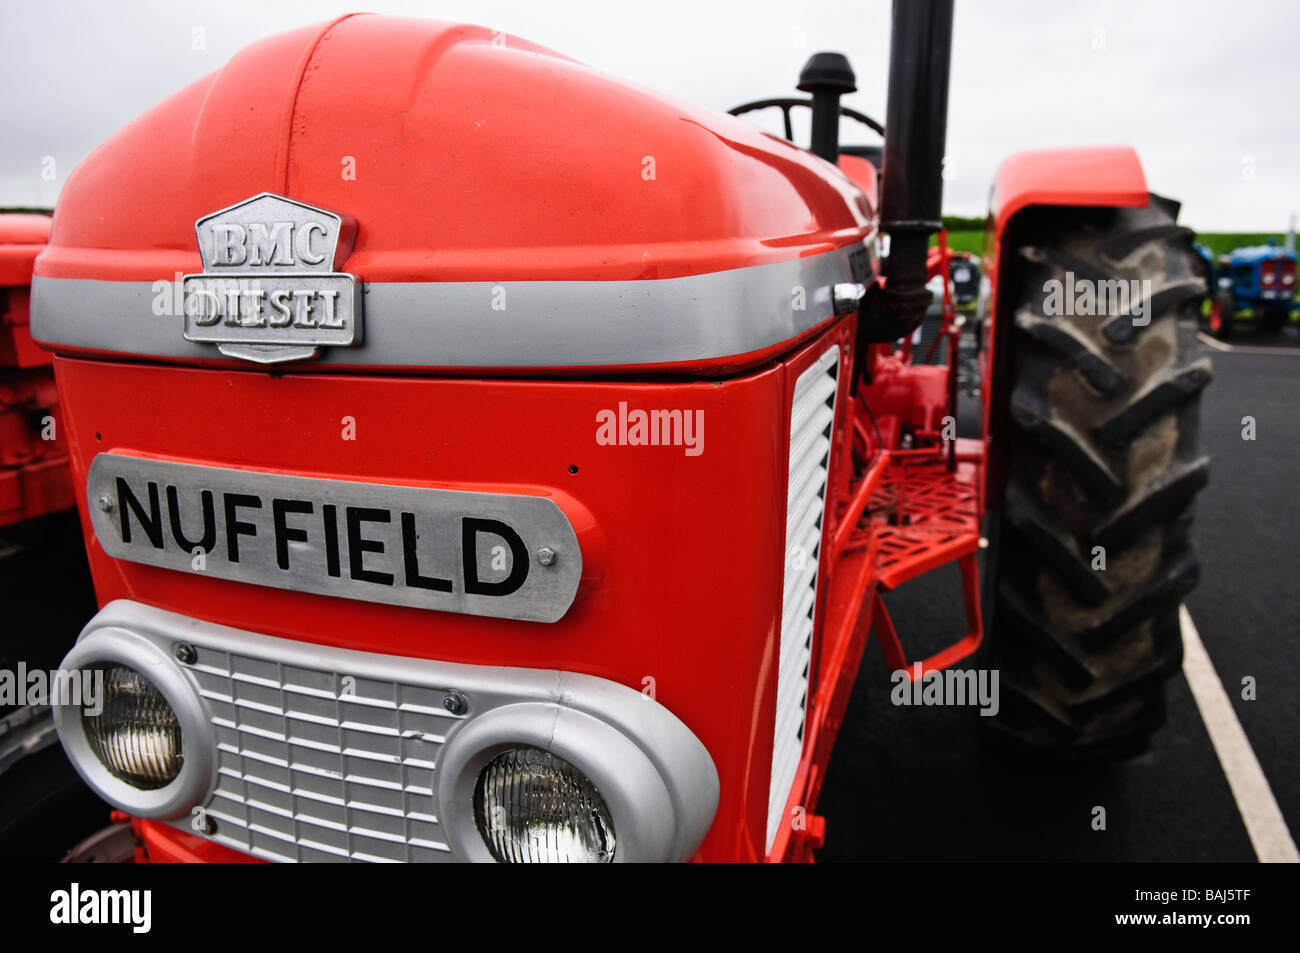 Avant d'un tracteur agricole rouge vintage Nuffield Banque D'Images